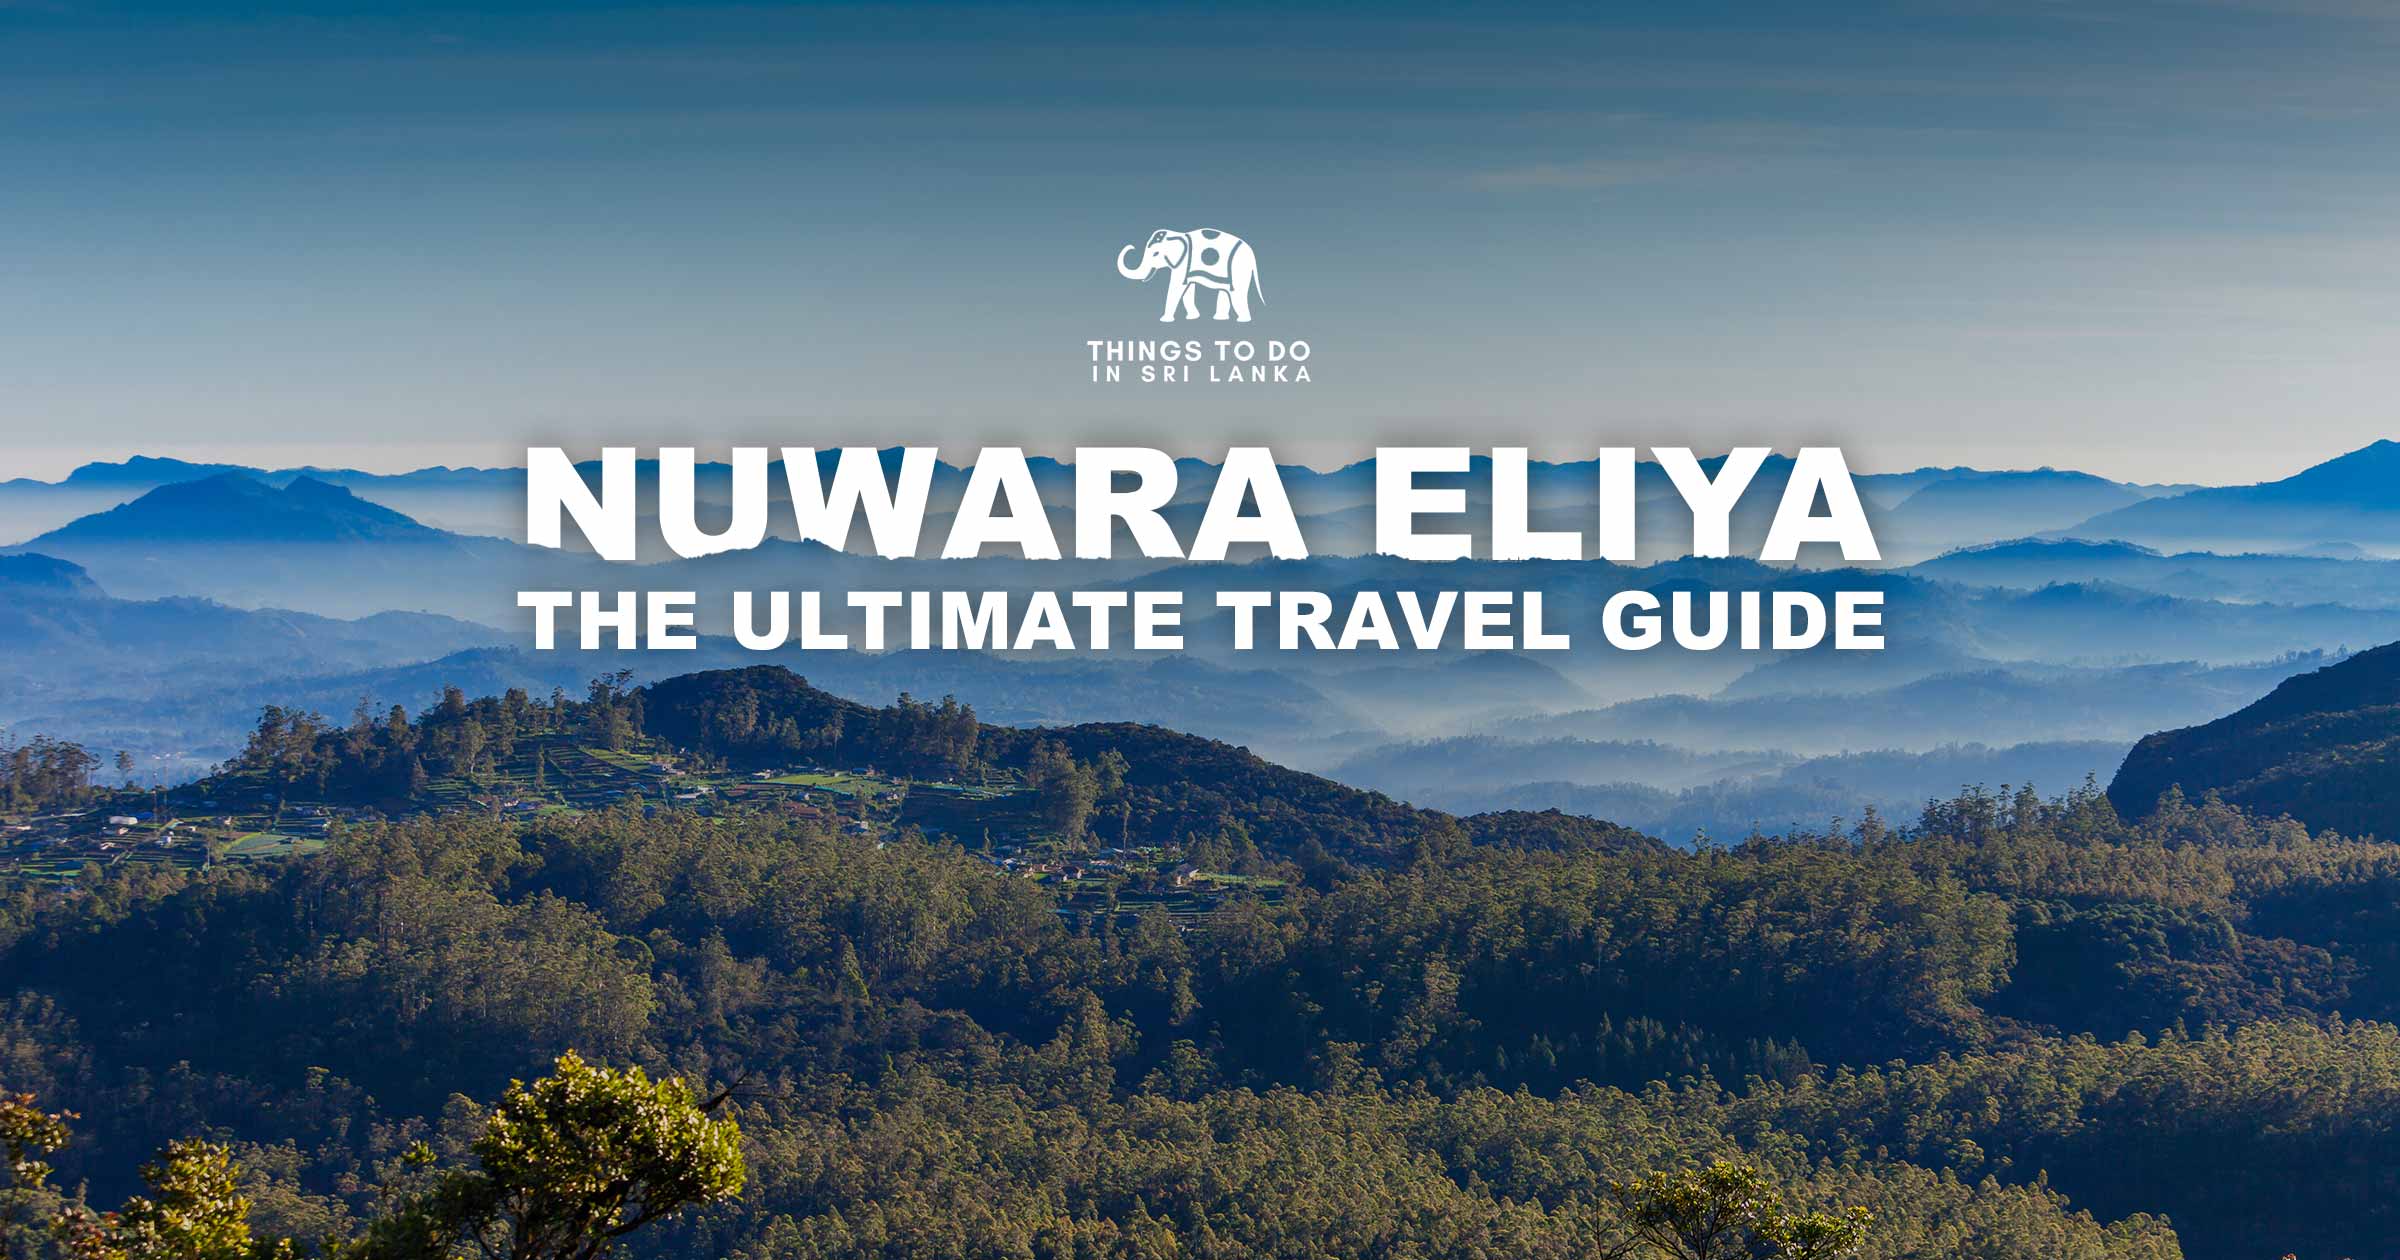 Nuwara Eliya - The Ultimate Travel Guide